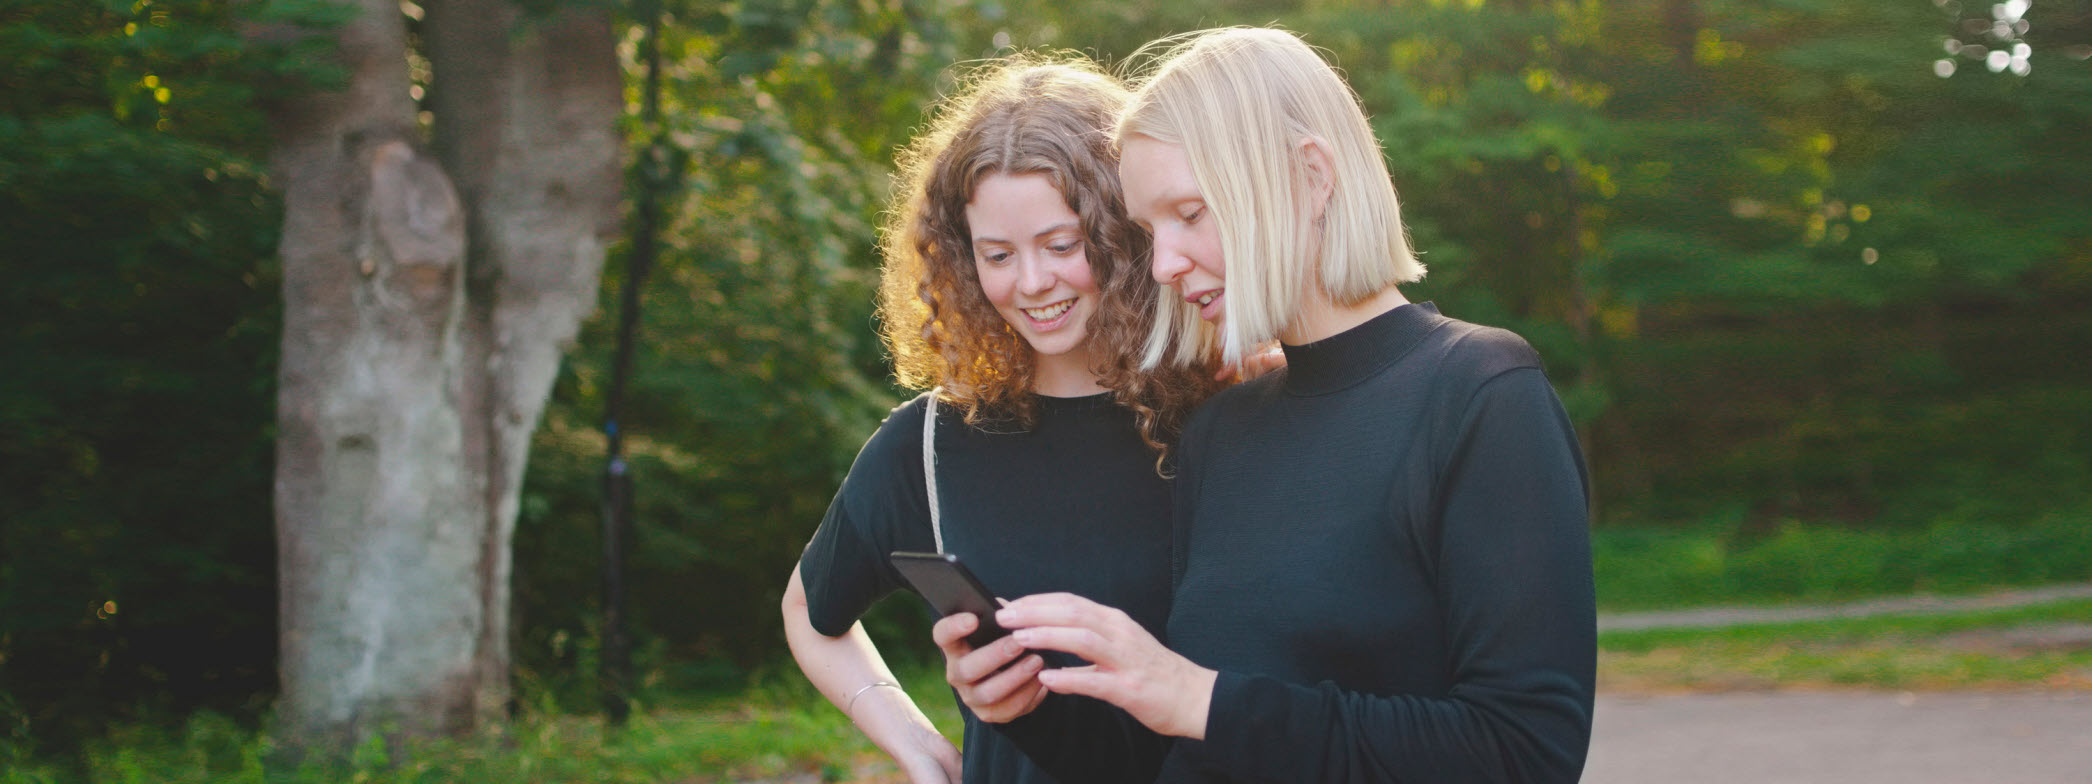 Två kvinnor står utomhus och tittar på en telefon.